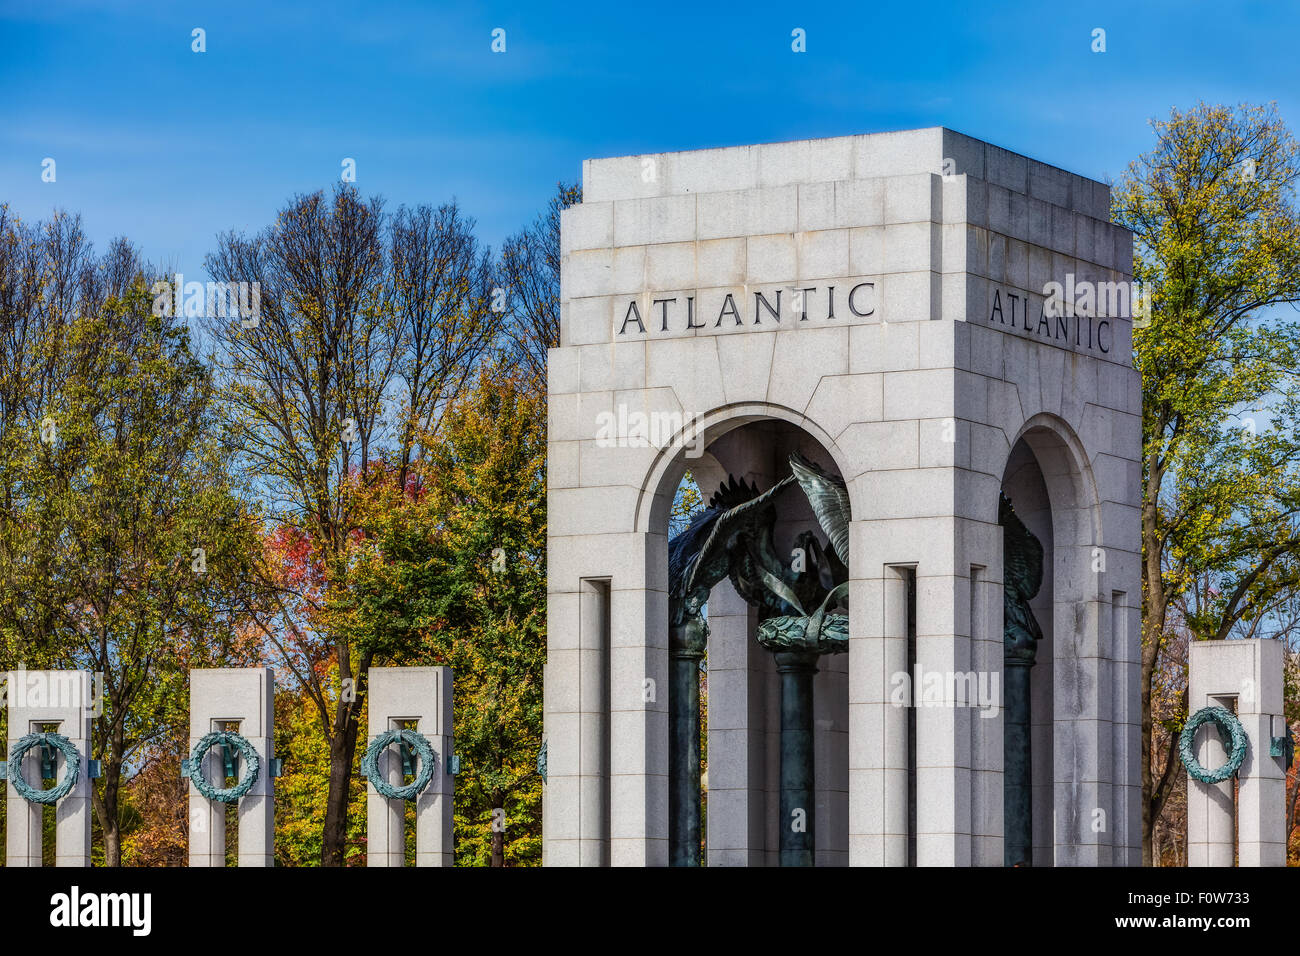 WWII Atlantic Memorial-Weltkrieg-II-Denkmal Kränze - Die National World War II Memorial zu Amerikanischen gewidmet ist, die in der Armee gedient und als Zivilisten während des Zweiten Weltkrieges. Es war der ehemalige Präsident George W. Bush im Jahr 2004 gewidmet. Zu sehen ist der Atlantik Abschnitt und einige der 56 Säulen, die die Gedenkstätte umgeben. Stockfoto